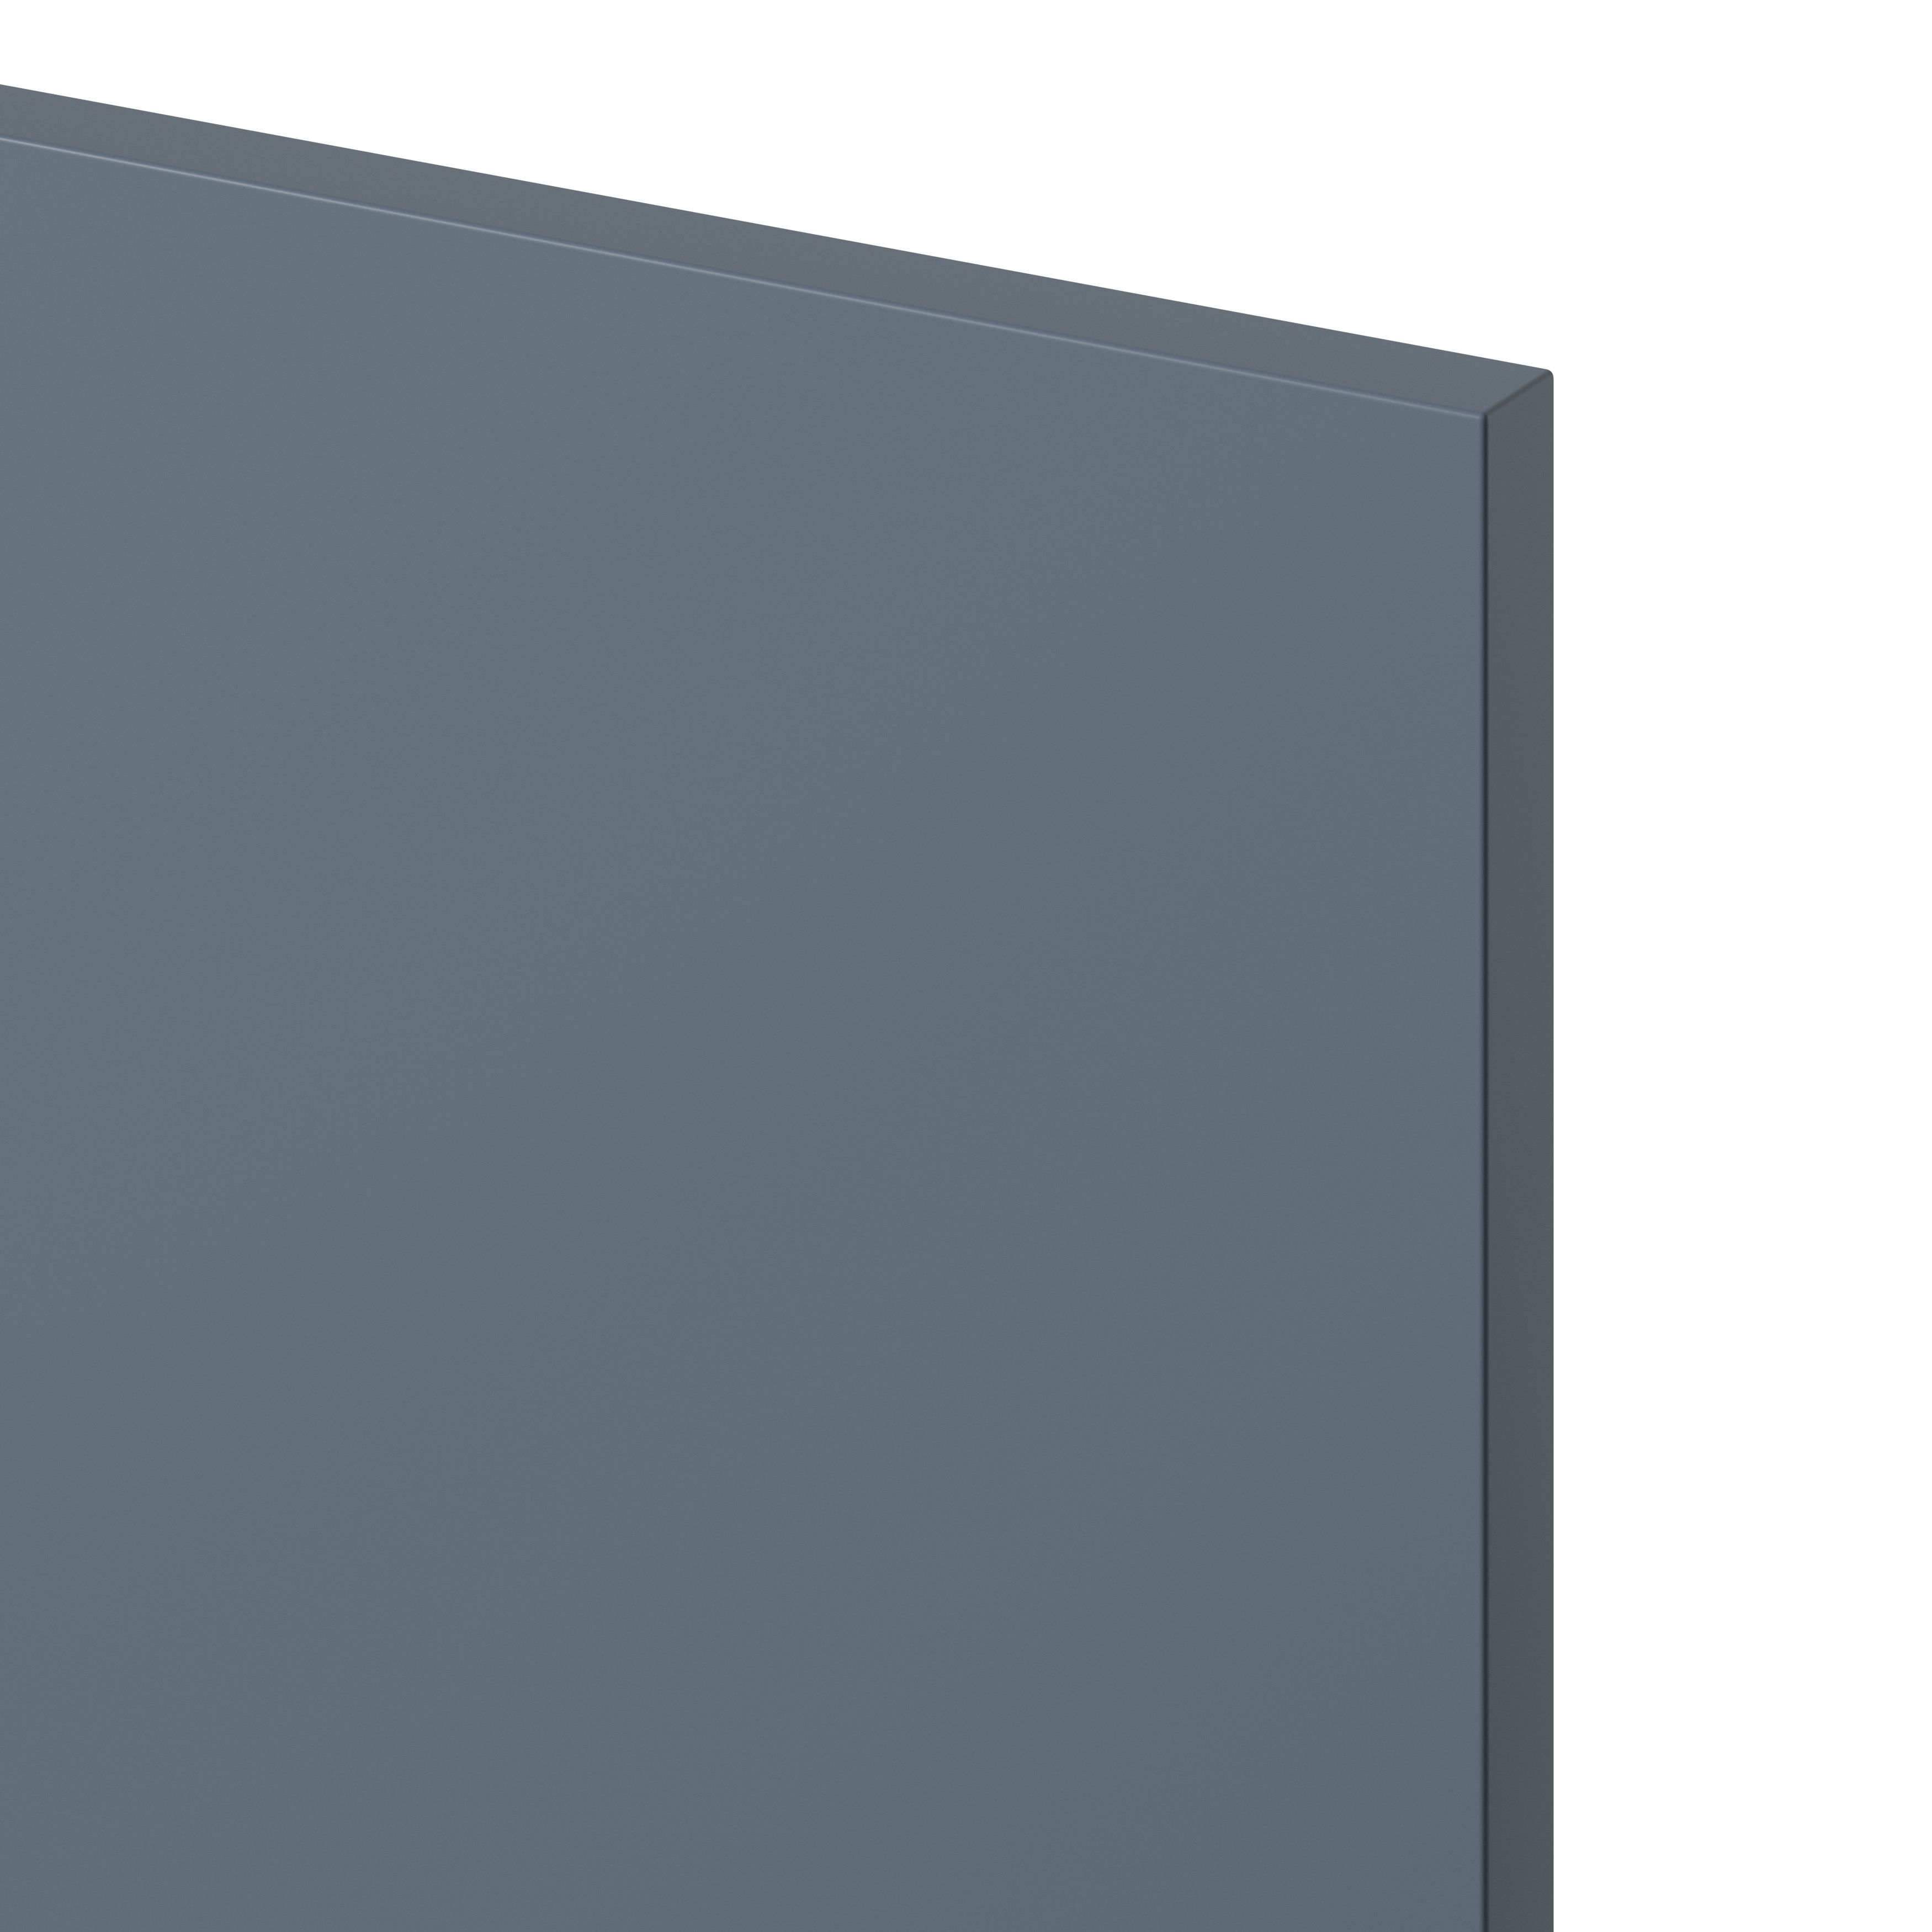 GoodHome Alisma Matt blue slab Drawer front, bridging door & bi fold door (W)500mm, Pack of 2